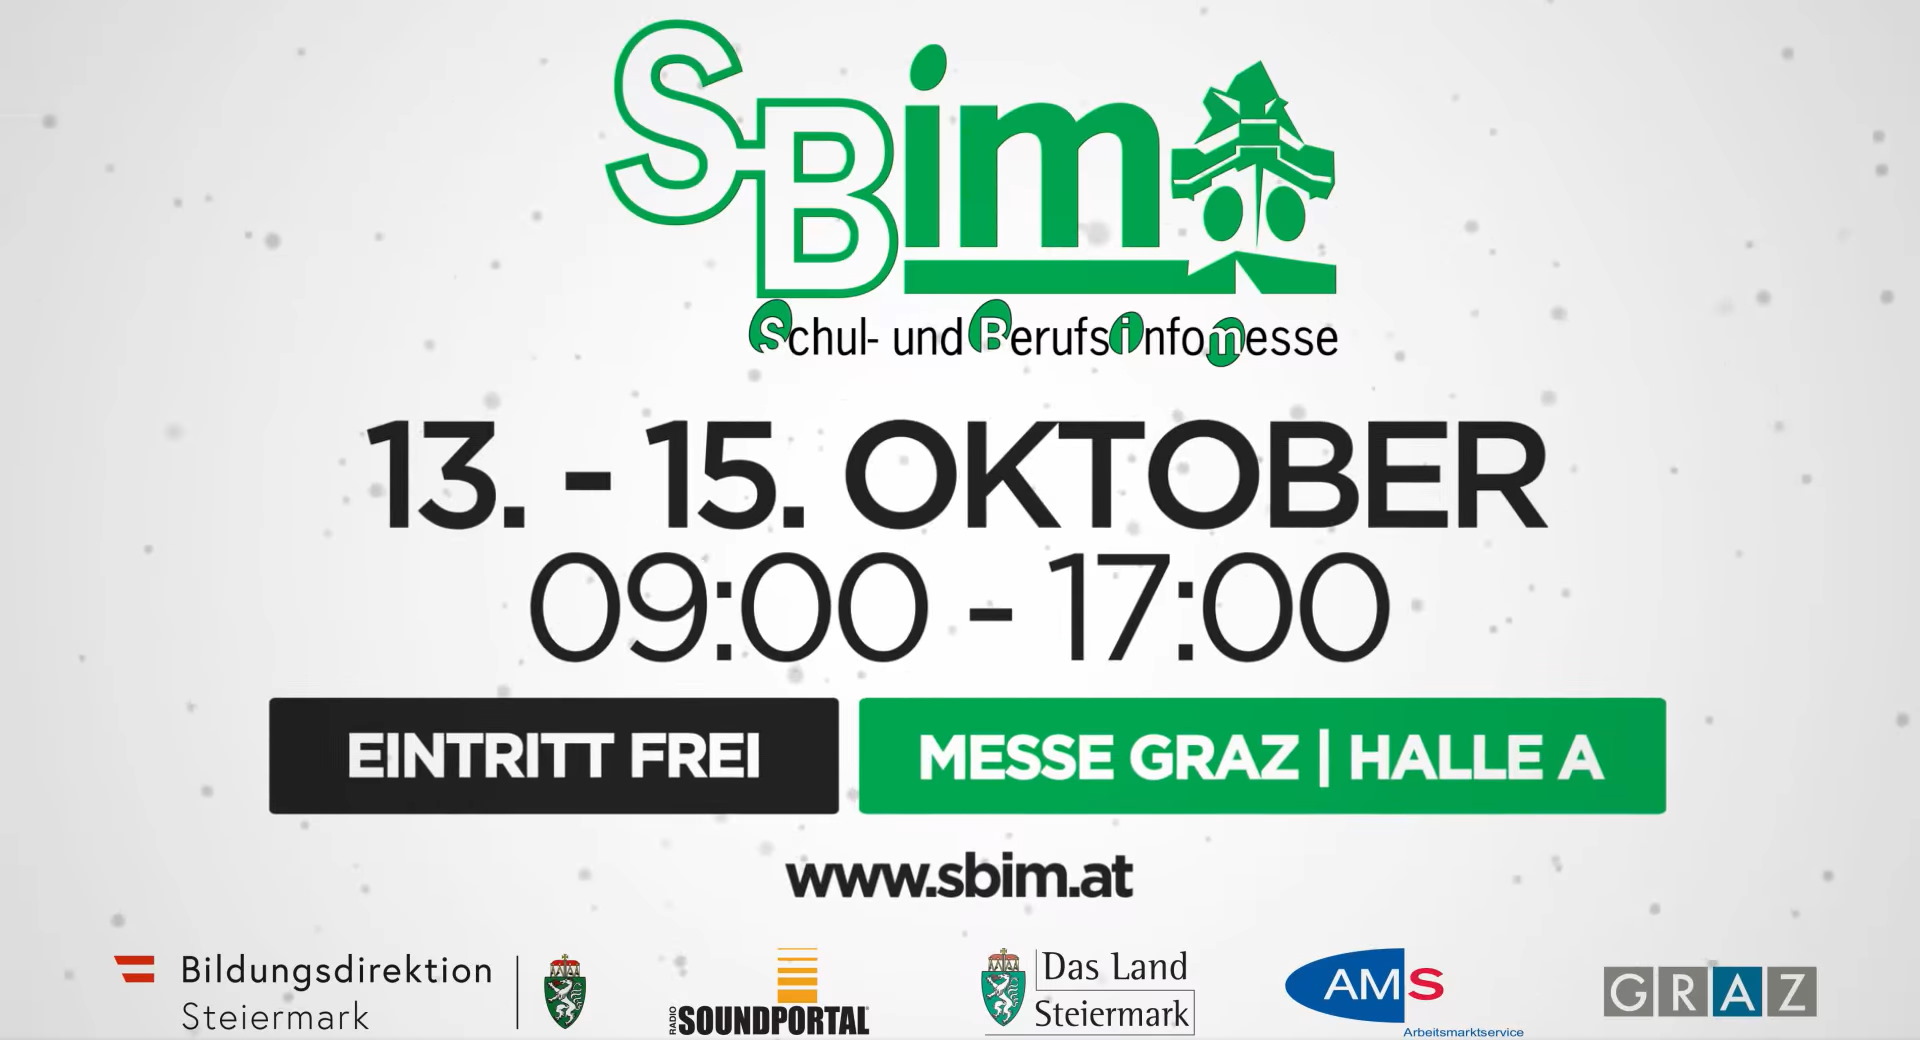 Schul- und Berufsinfomesse Graz (S-Bim)